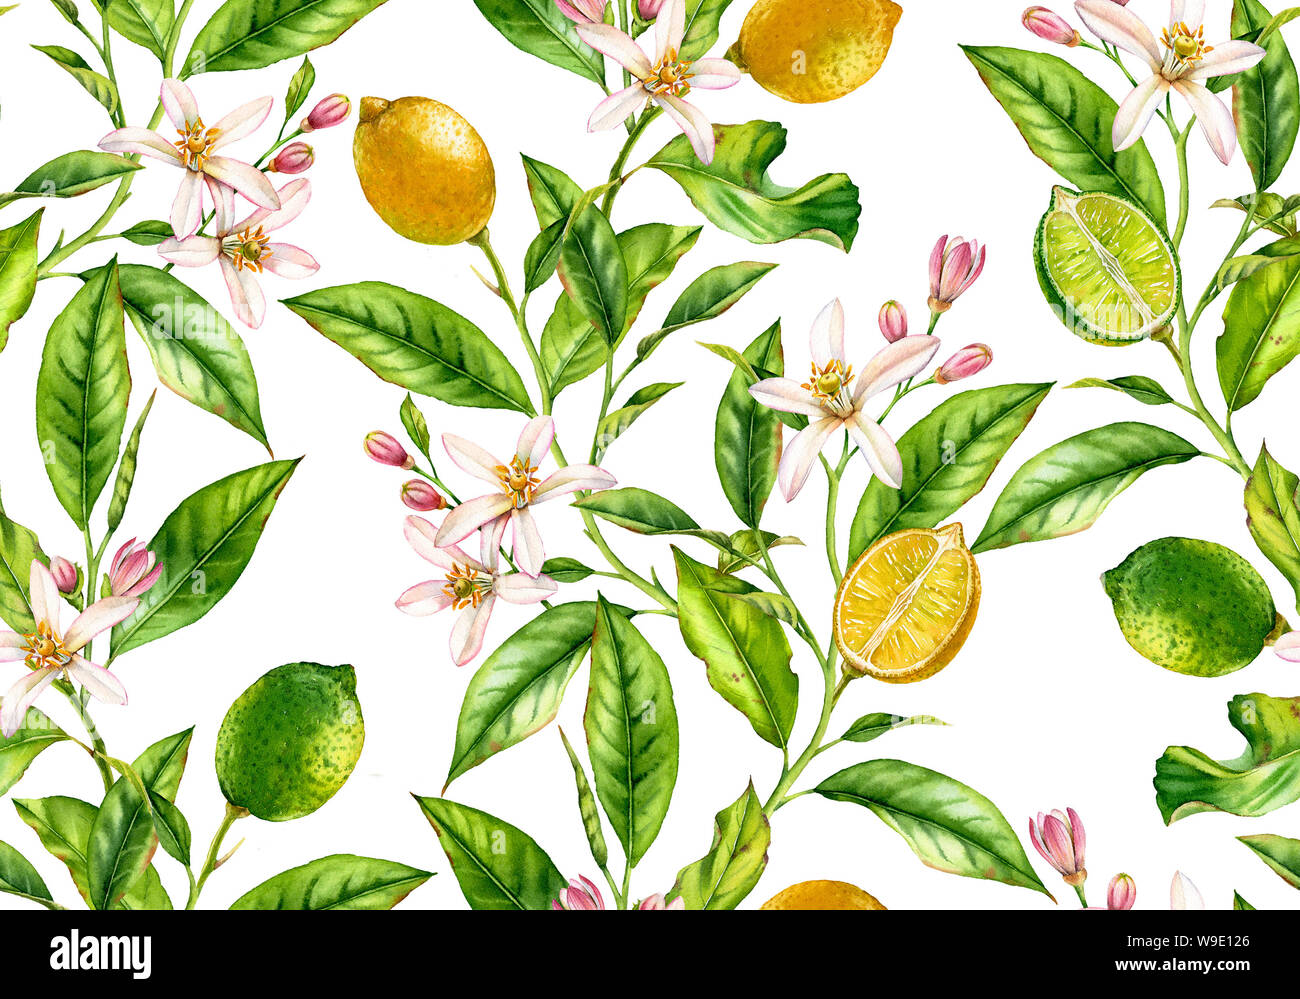 Lemon Lime Obst nahtlose Muster Aquarell baum mit blumen realistische Botanischen floral Oberfläche Design: Ganze halbe Zitrusfrucht Blätter isoliert Stockfoto